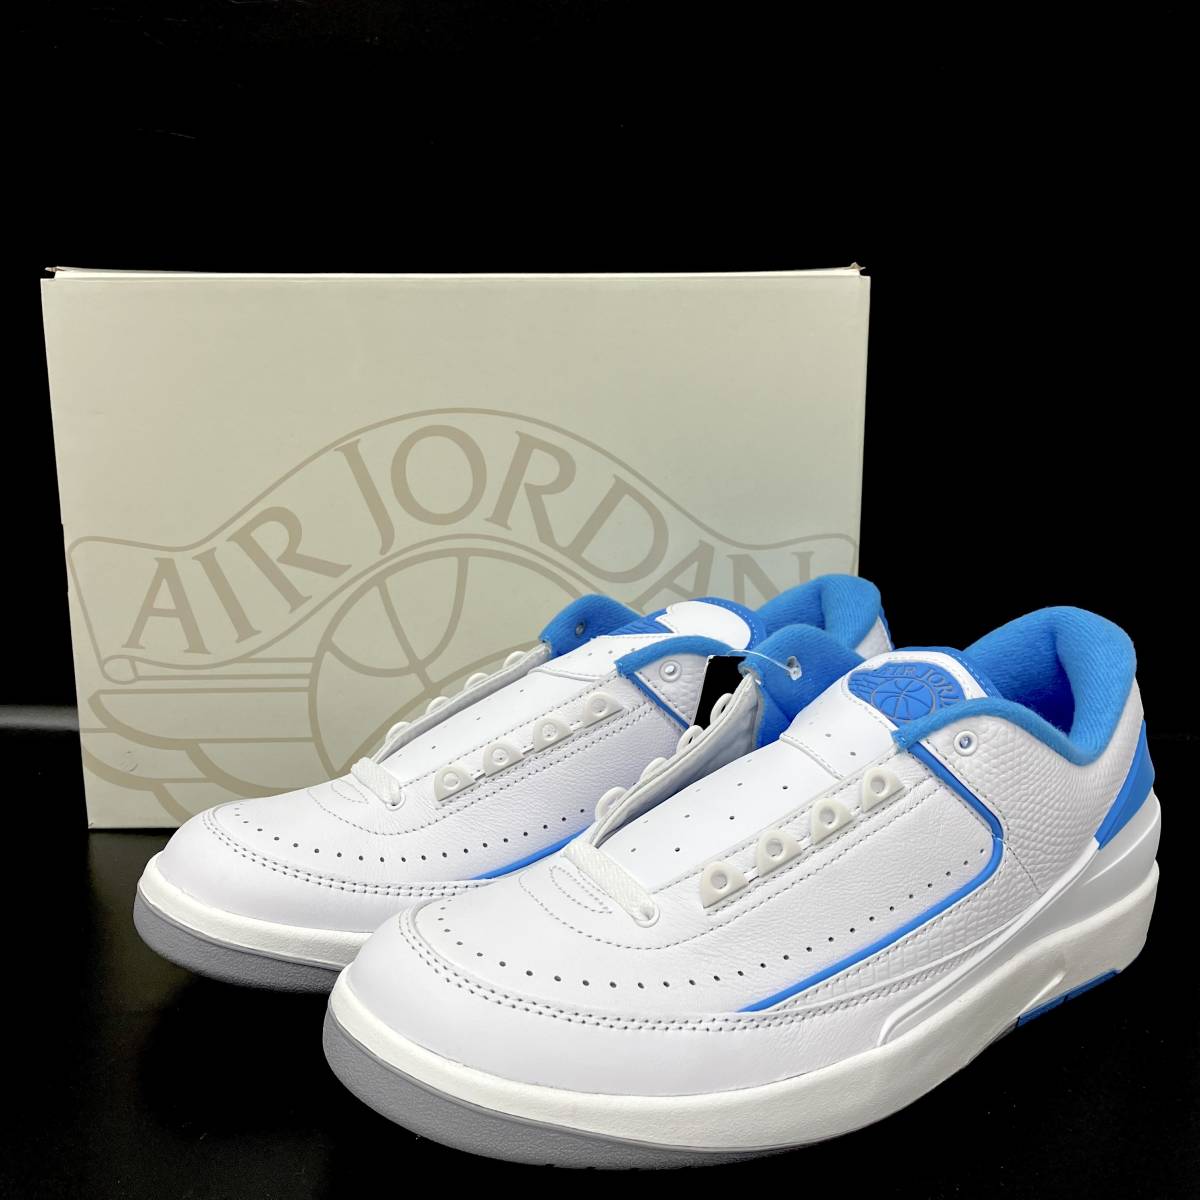 Nike Air Jordan 2 Retro Low University Blue ナイキ エアジョーダン2 レトロ ユニバーシティブルー DV9956-104 29.0cm